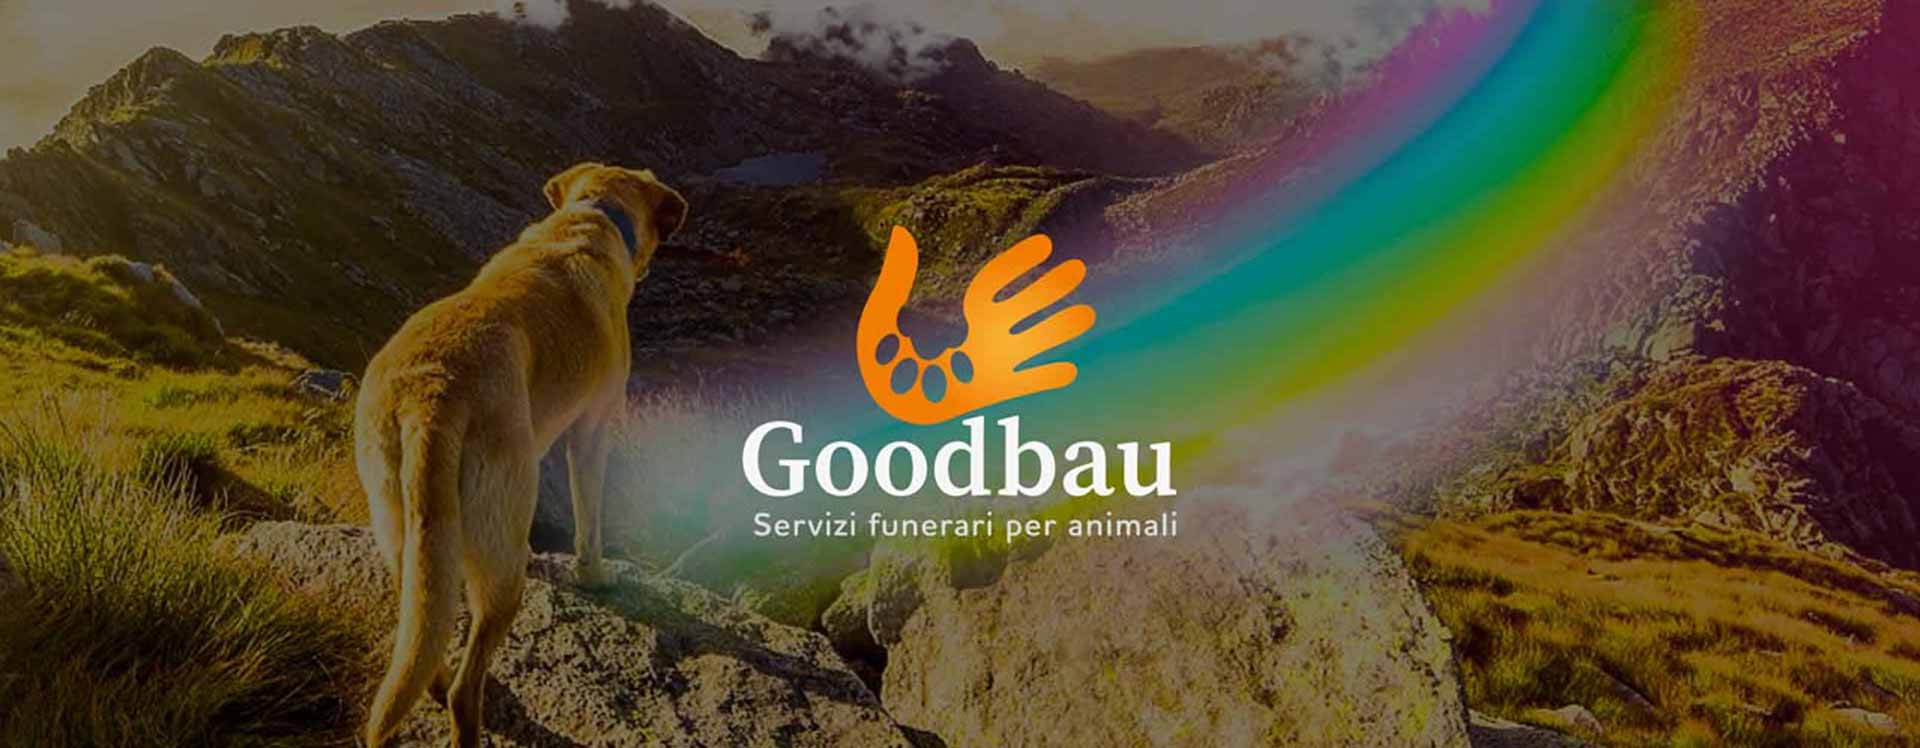 Comunicazione integrata inbound marketing Goodbau - Case history Unique